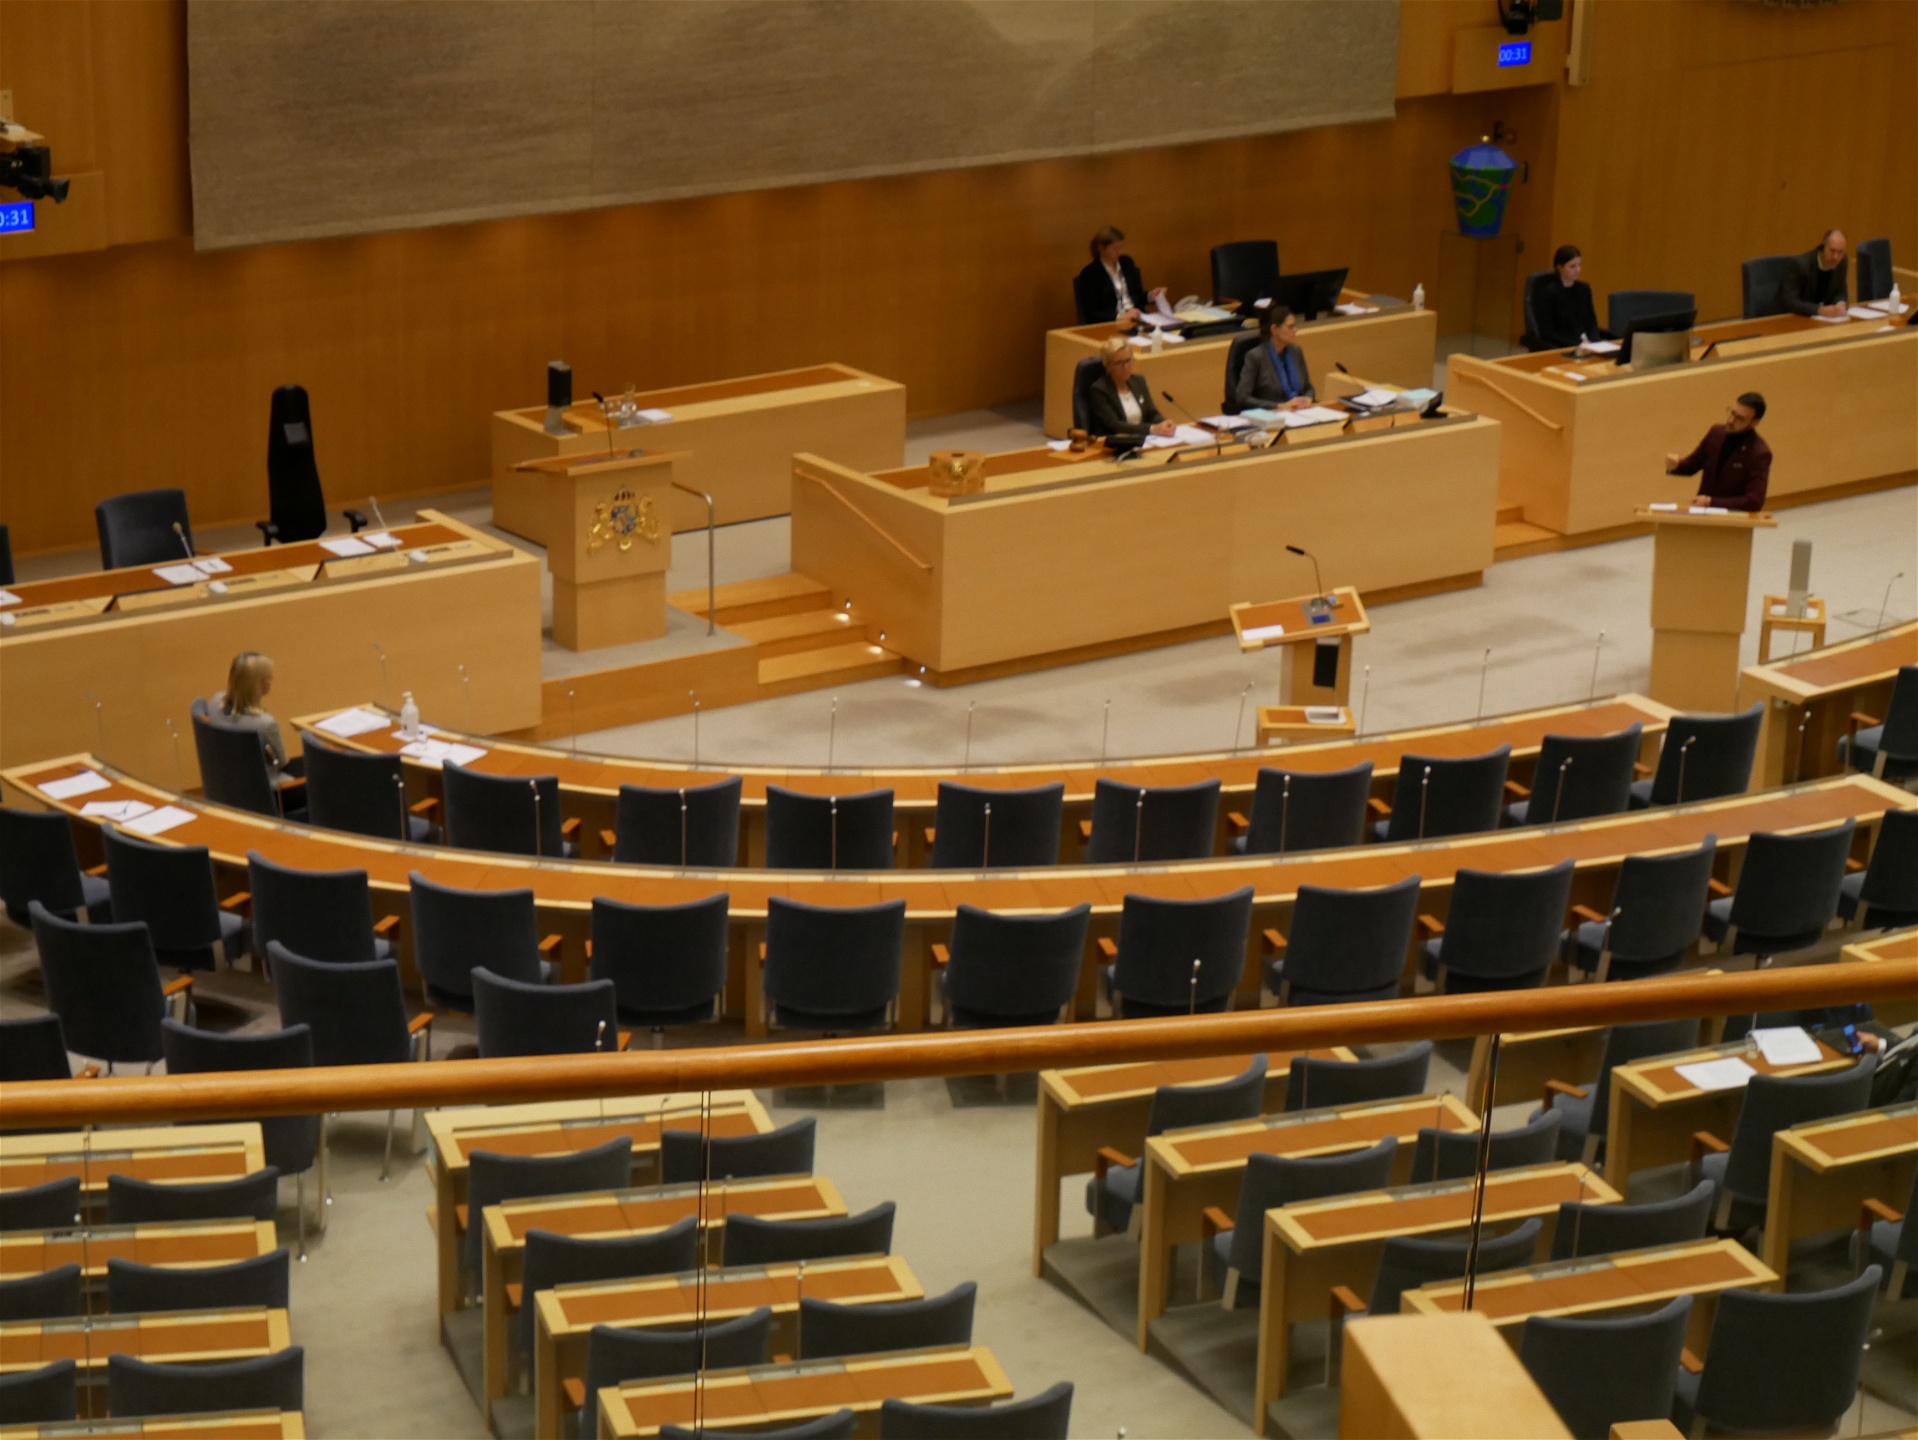 Foto: Julia LindblomRiksdagsledamoten Tony Haddou tog initiativ till debatten med anledning av hjälporganisationen Oxfams granskande rapport om skatteflykt.